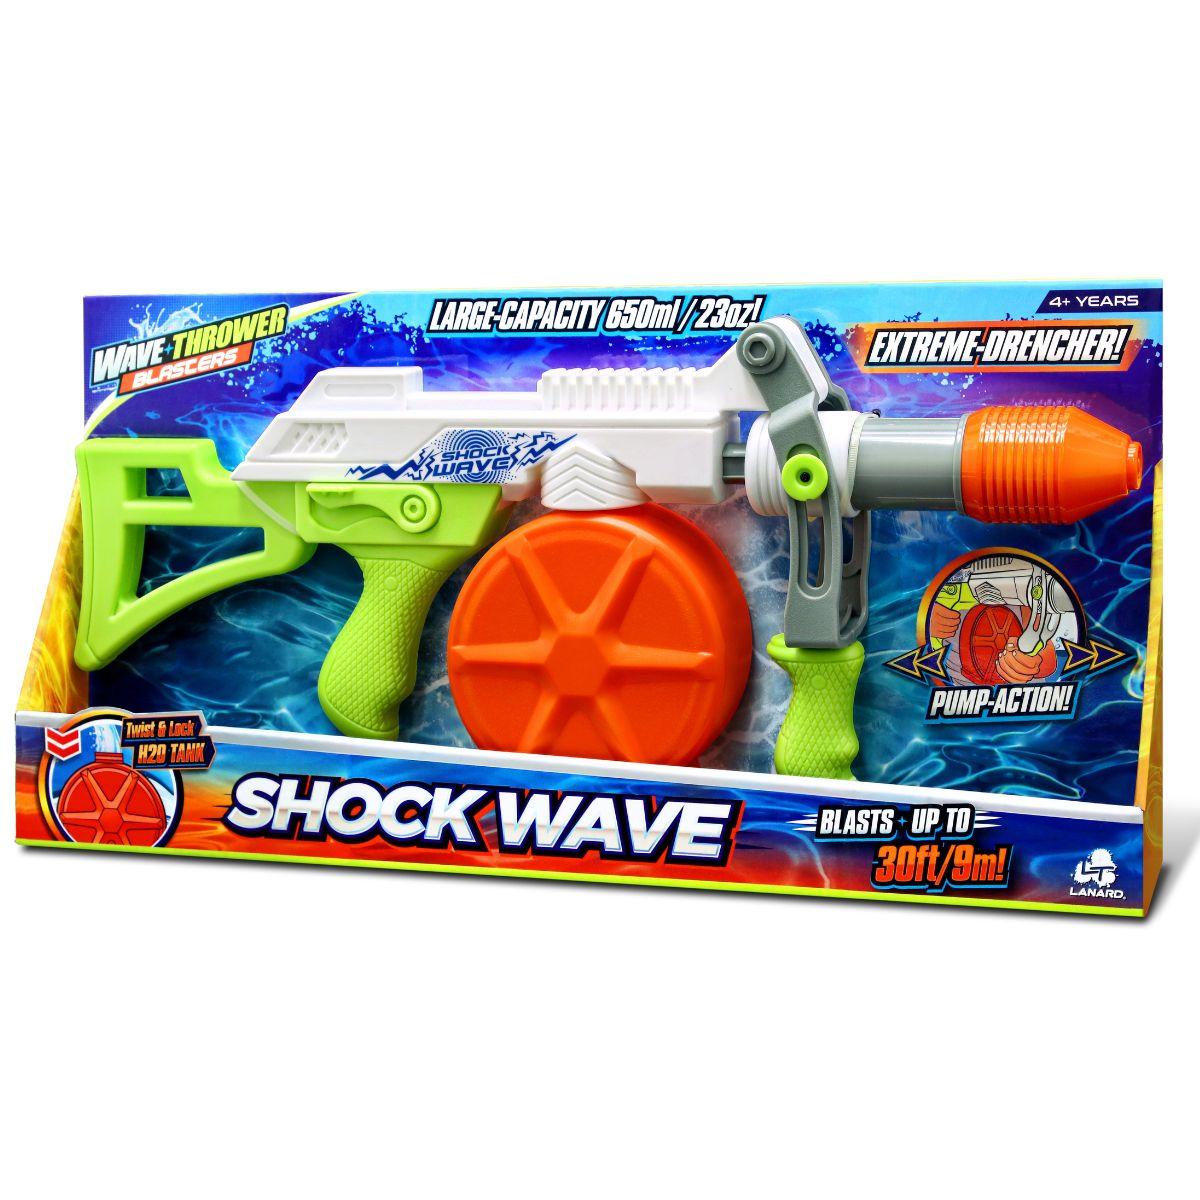 Wave Thrower Shock Wave